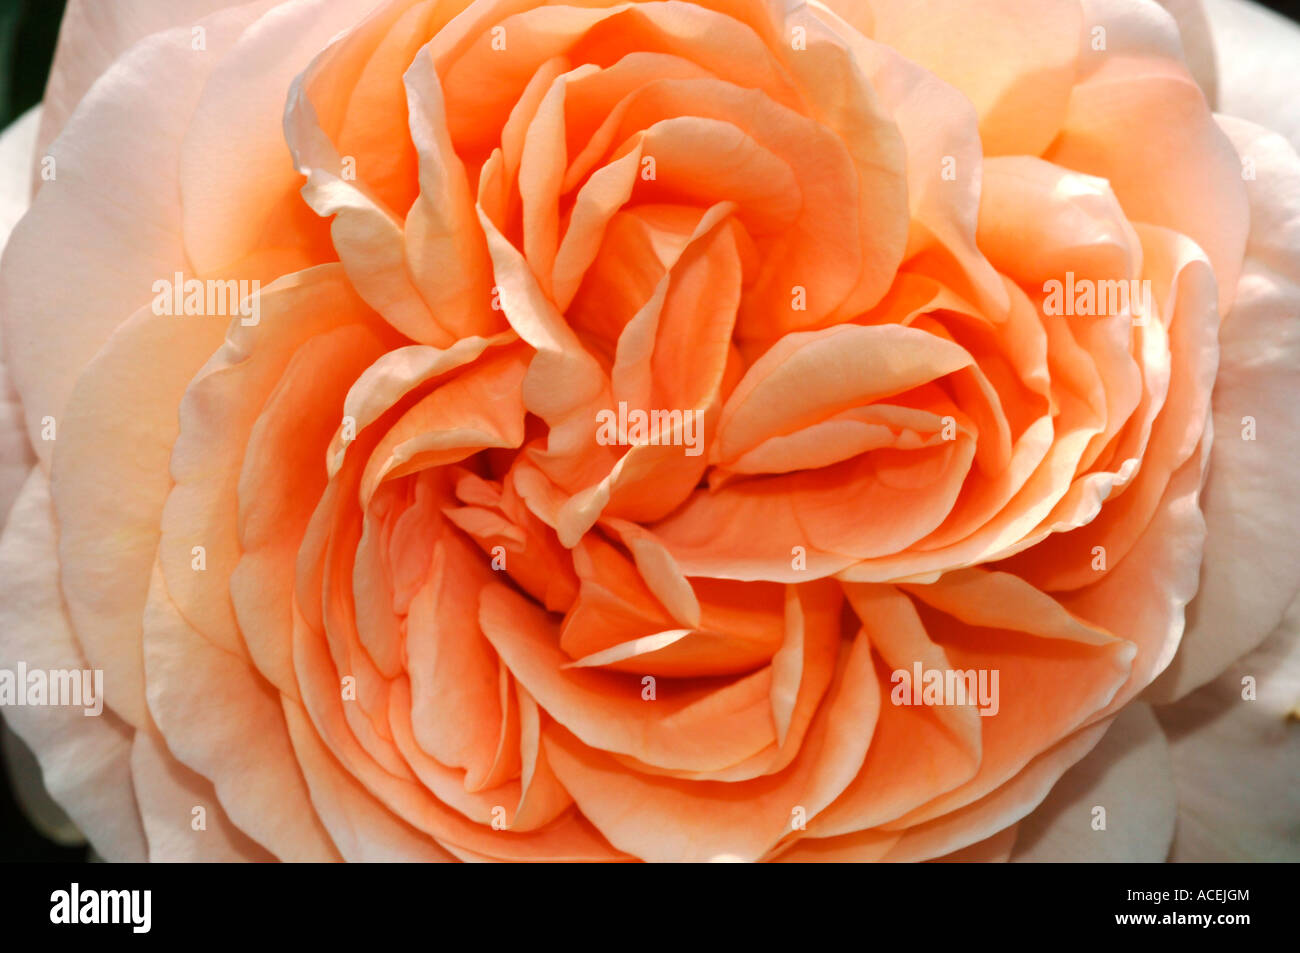 Nahaufnahme einer Pfirsich farbigen Rose benannt Ambridge. Stockfoto